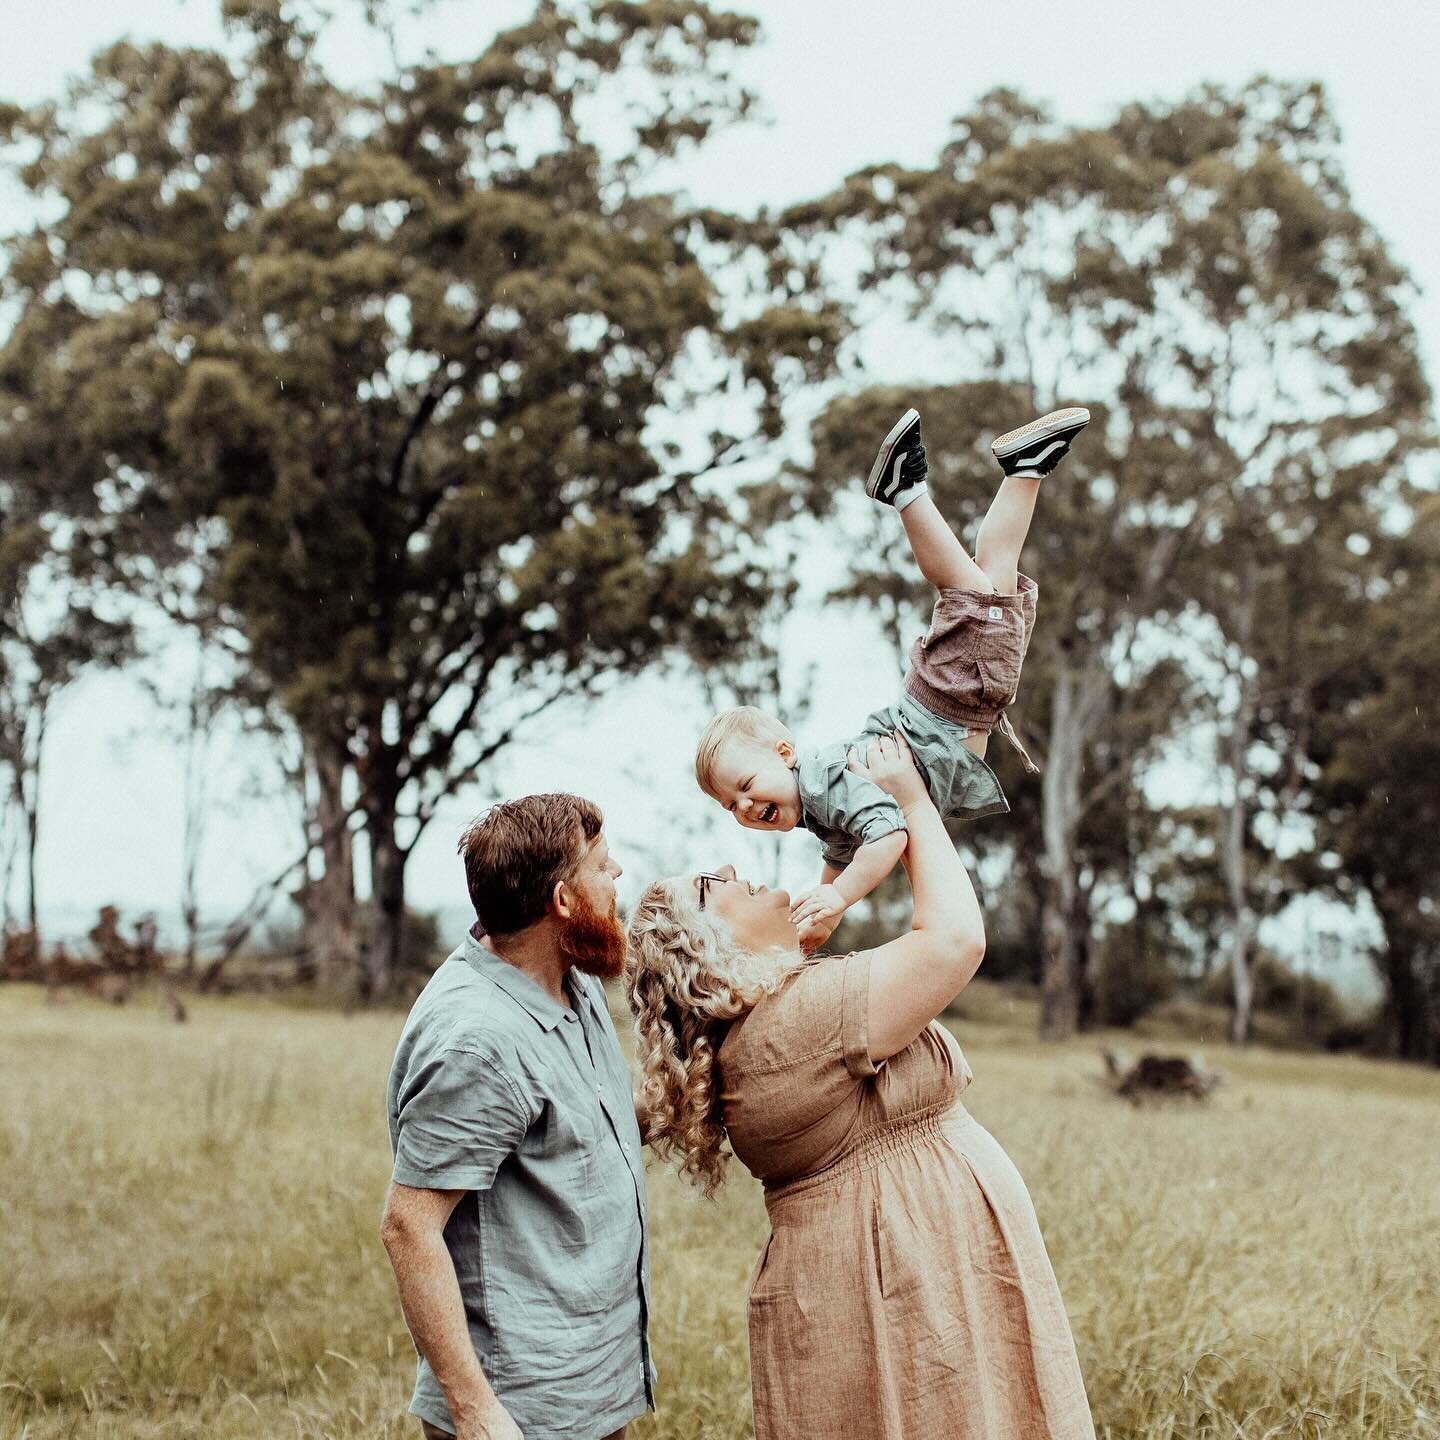 The Caamano Family ✨

@xtinacomeonyo 

#familyphotography #naturalfamilyphotography #sydneyphotographer #sydneyfamilyphotographer #authenticstorytelling